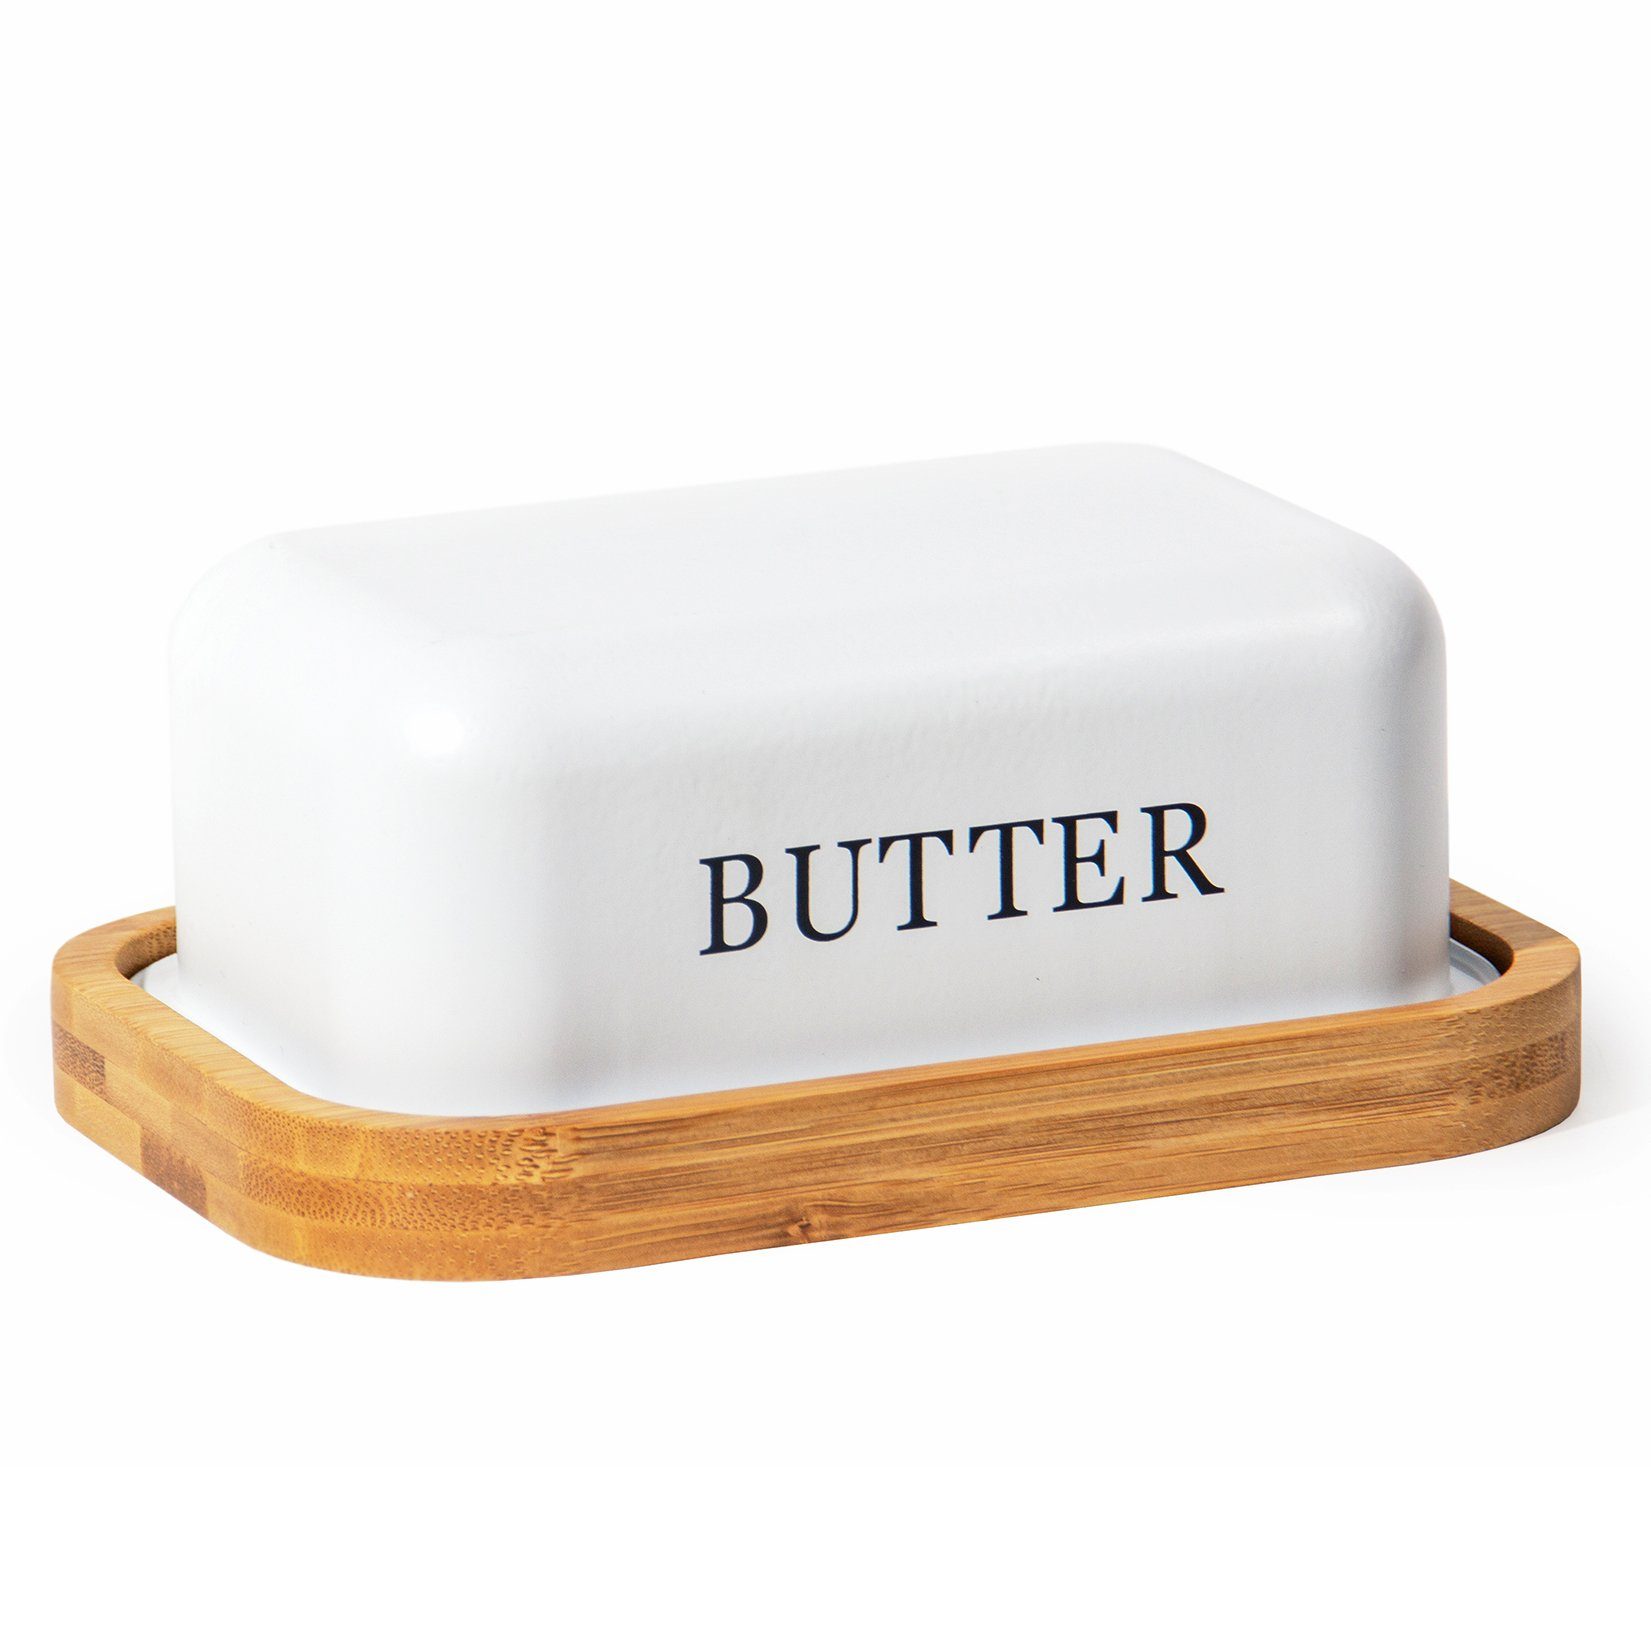 Zedelmaier Butterdose Butterdose,Butterglocke für 250g Butter,mit nachhaltigem holzdeckel, (Packung, 1 x Becher, 1 x Deckel, HYH004), Butterdose aus beschichteter Metallplatte, rundem Rand Weiss+hölzerne Abdeckung